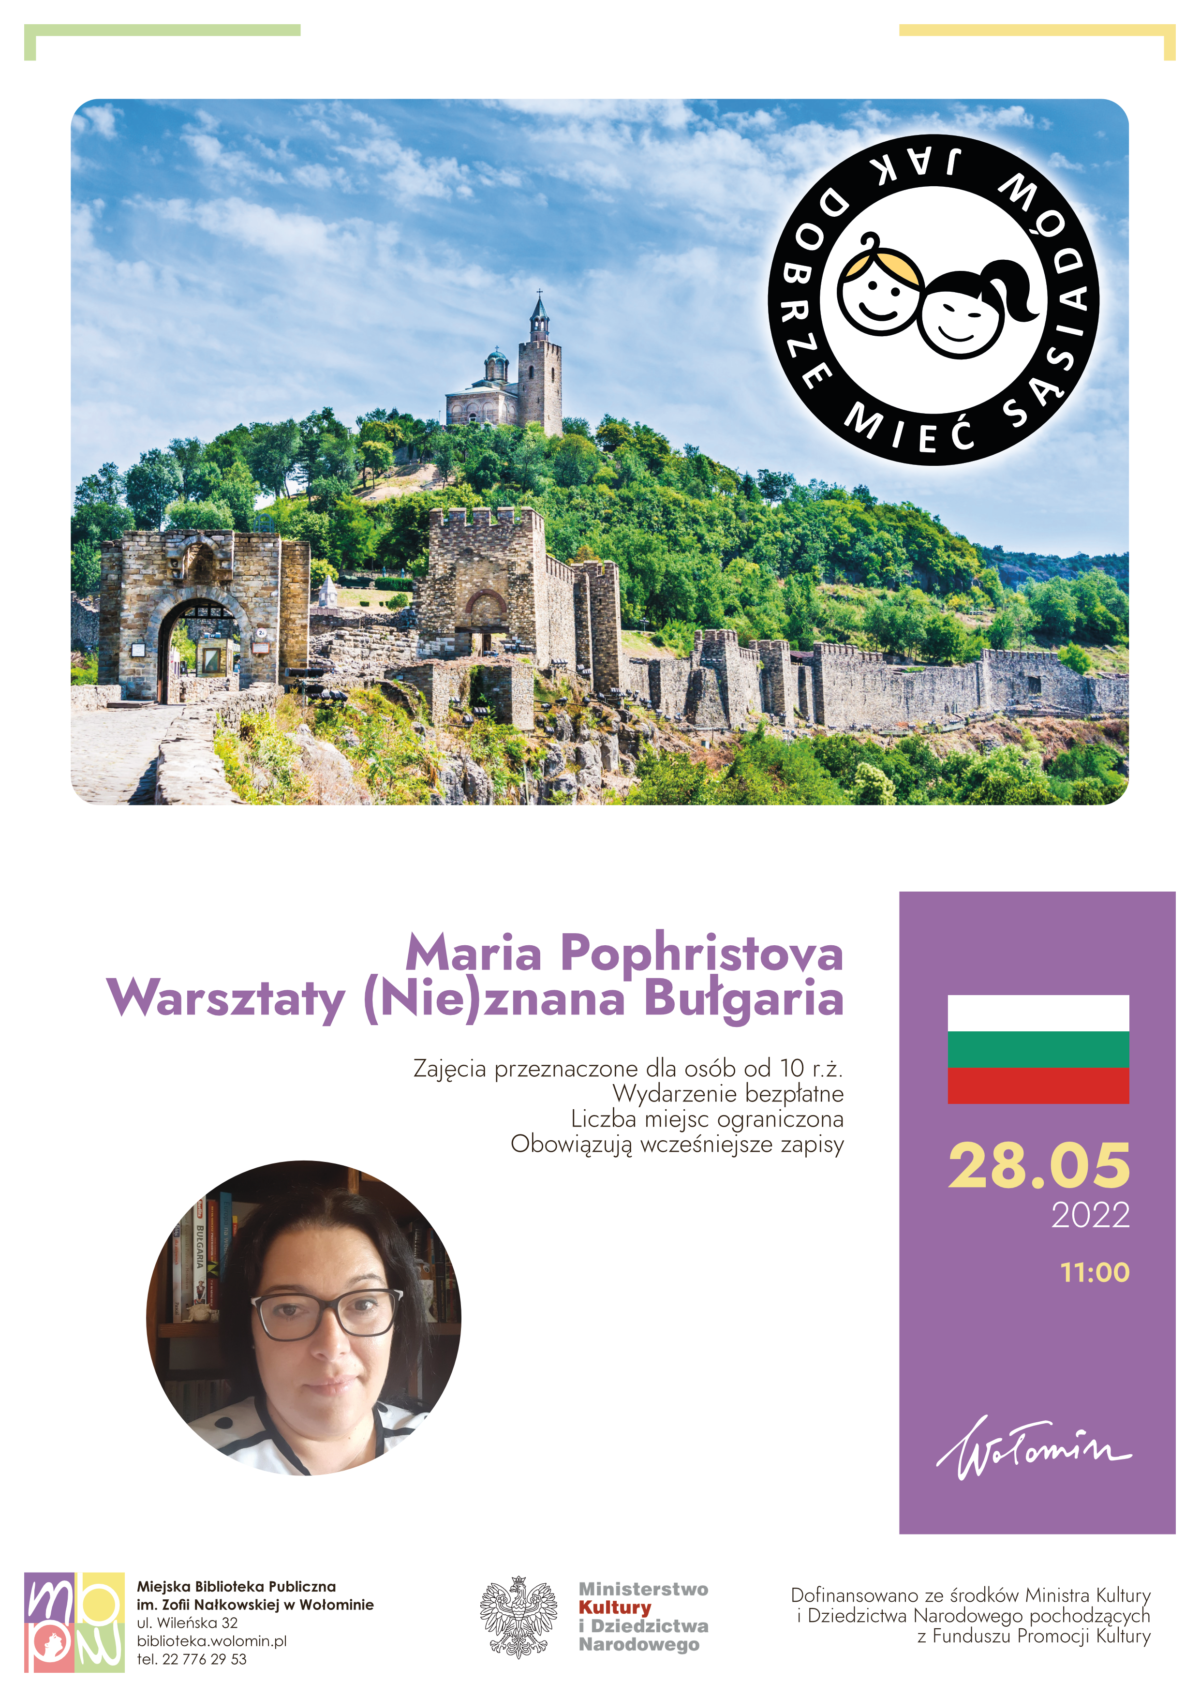 Grafika przedstawia ruiny zamku na tle zieleni. Bułgaria. Logo programu "Jak dobrze mieć sąsiadów" zawiera dwie buzie. Na dole plakatu twarz kobiety - autorki warsztatów.